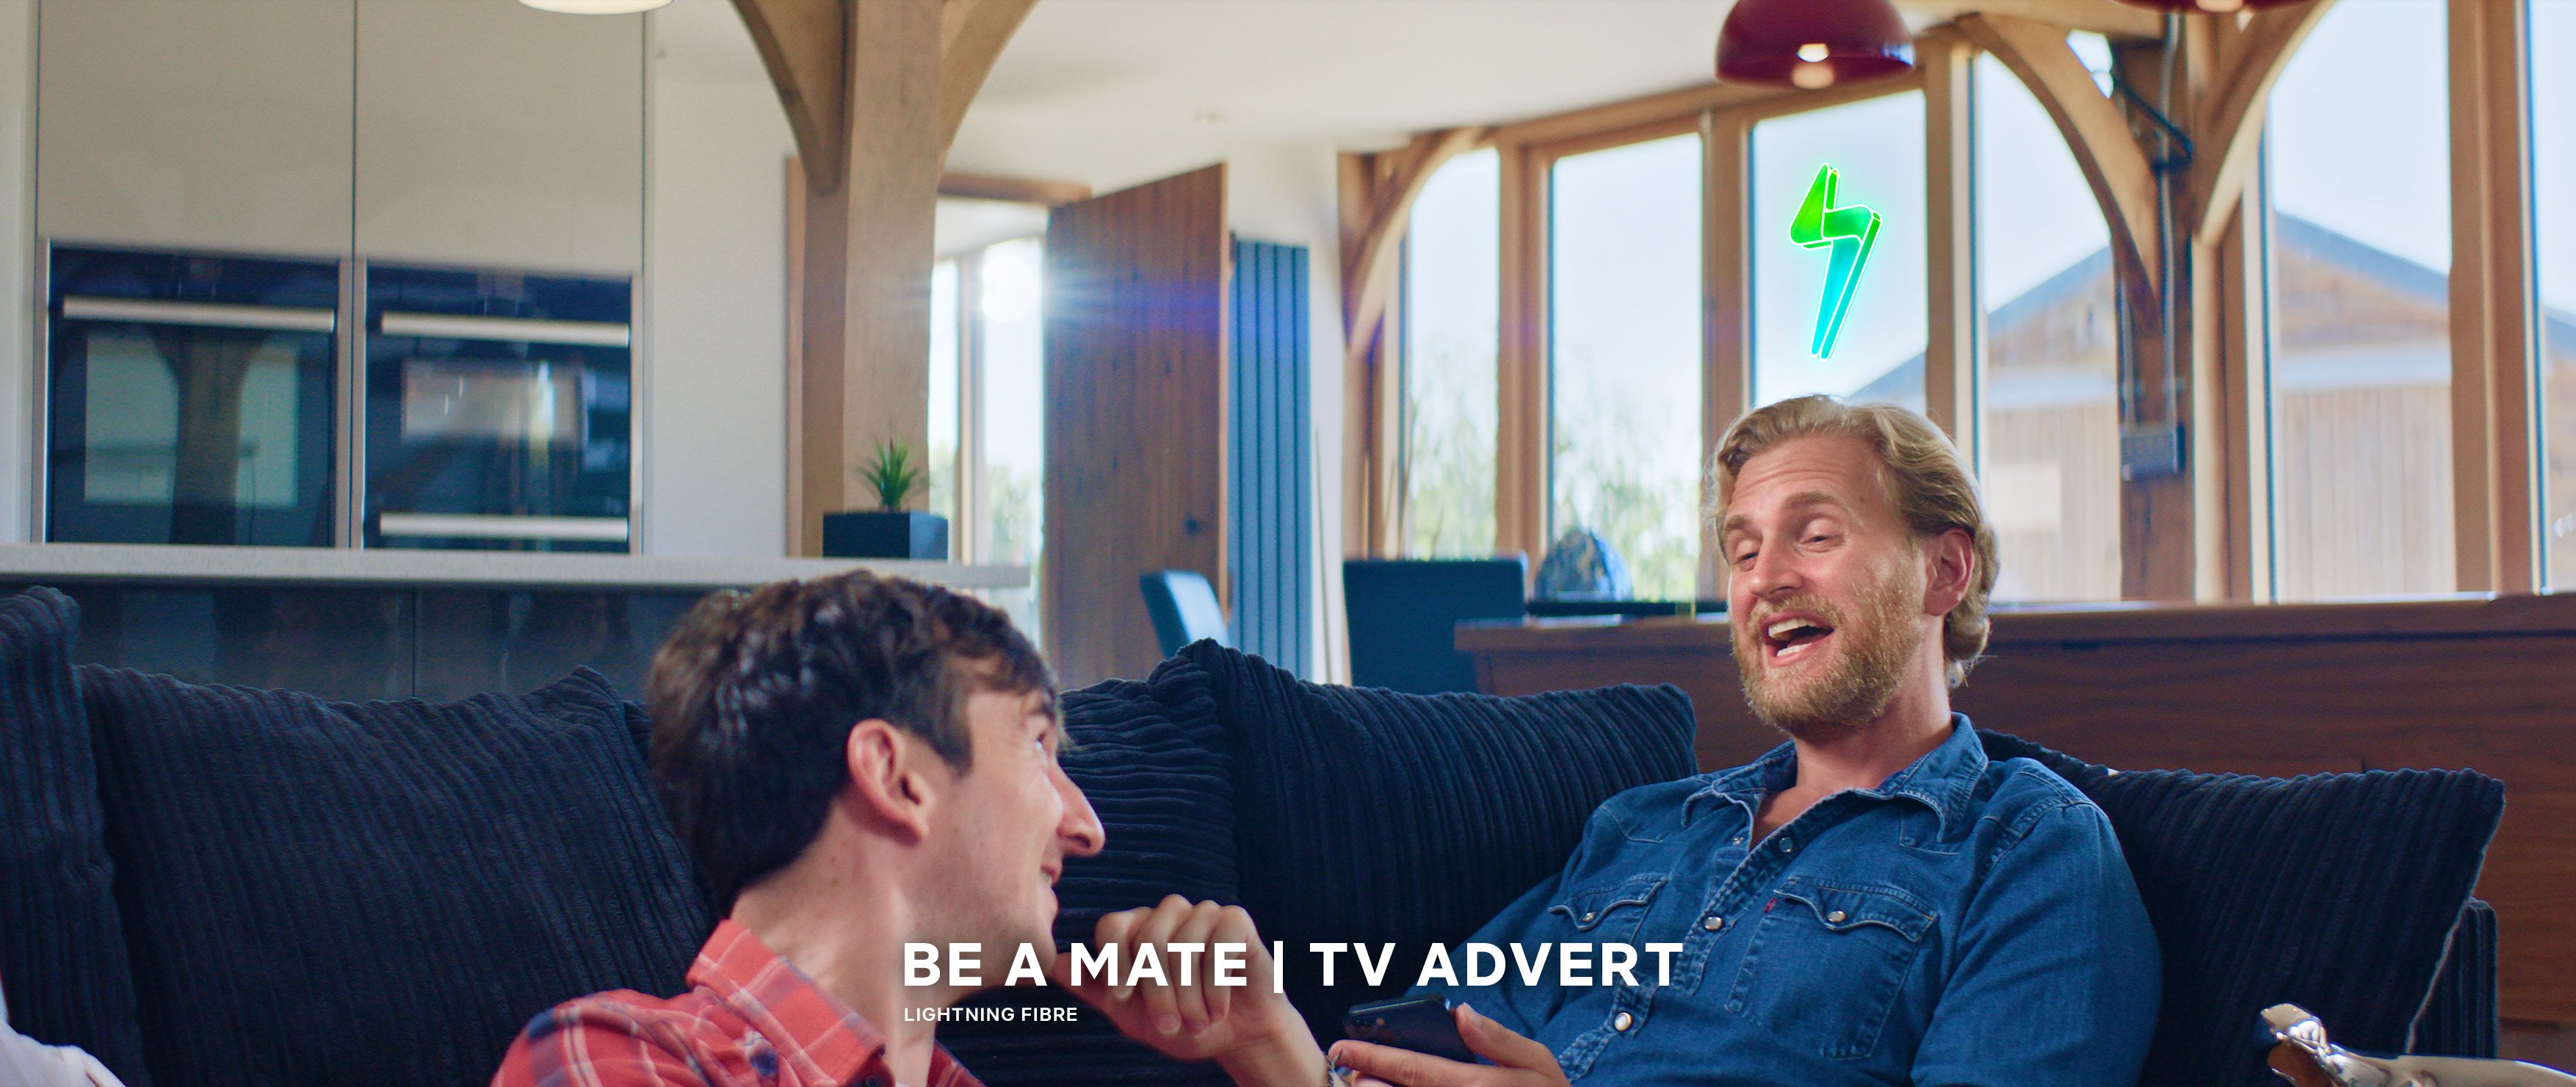 Lightning Fibre Be a mate | TV Advert